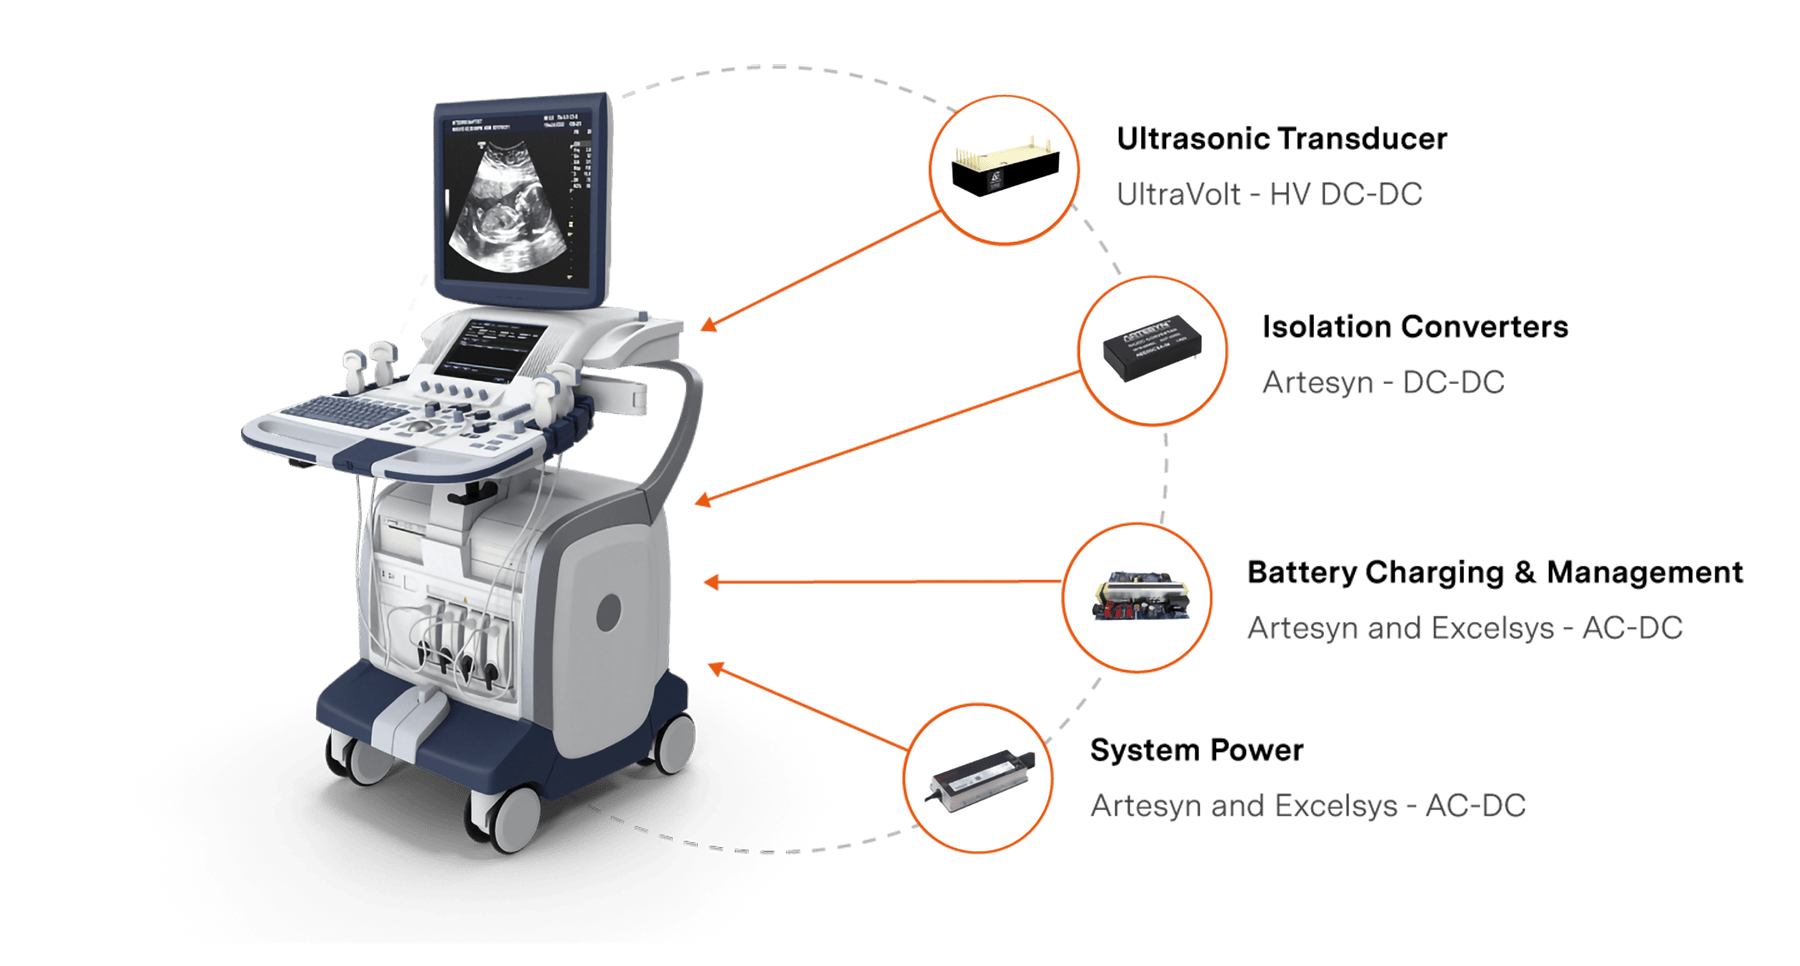 ultrasound machine parts